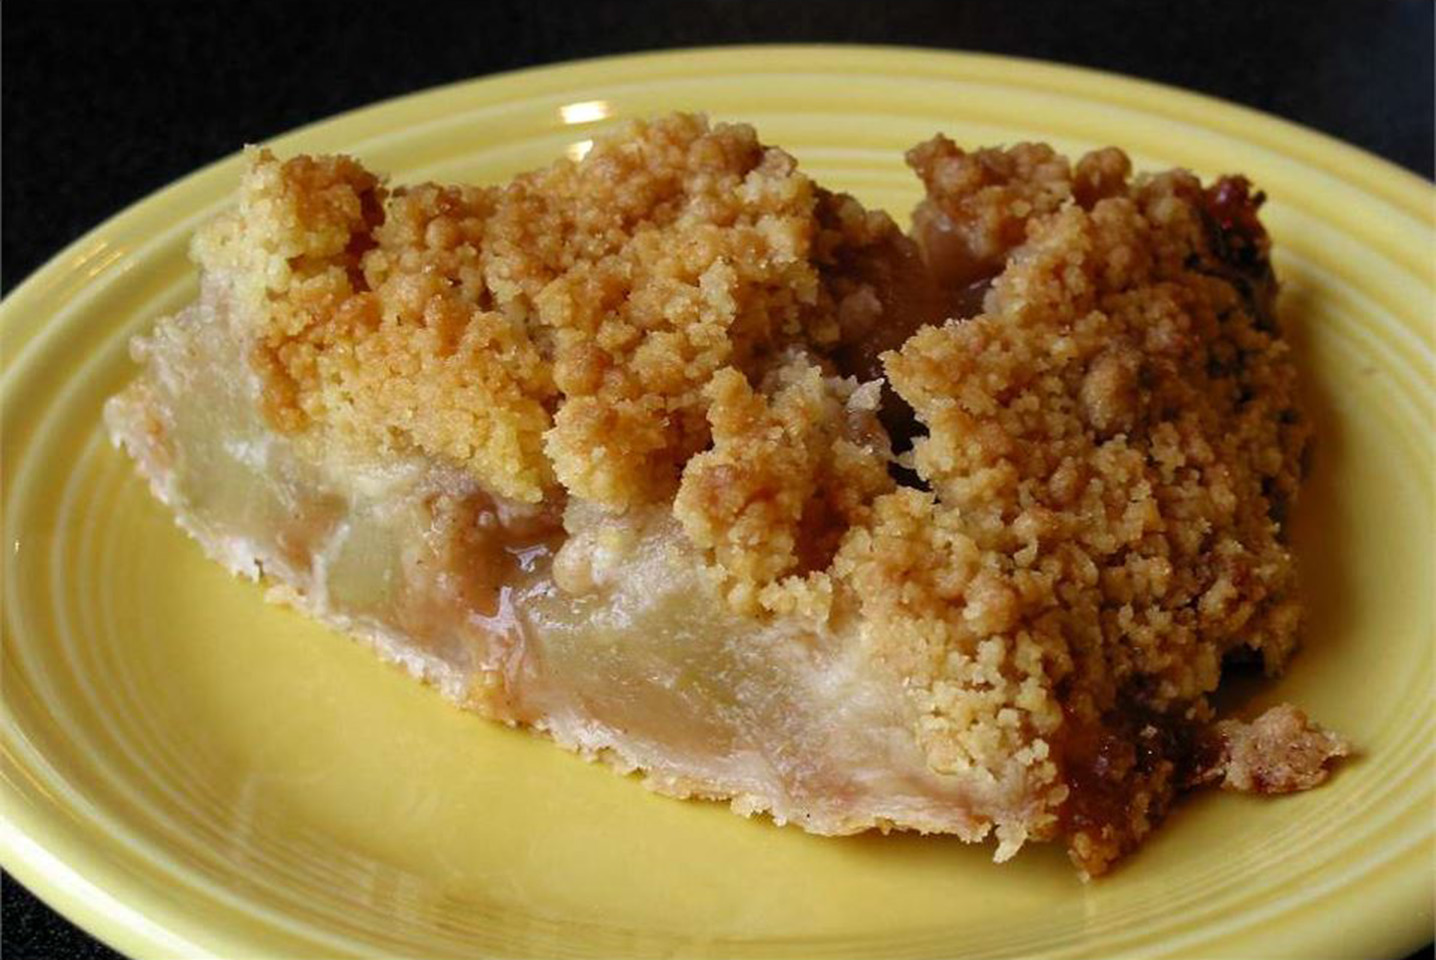 Apple Crunch Pie with Vanilla Sauce